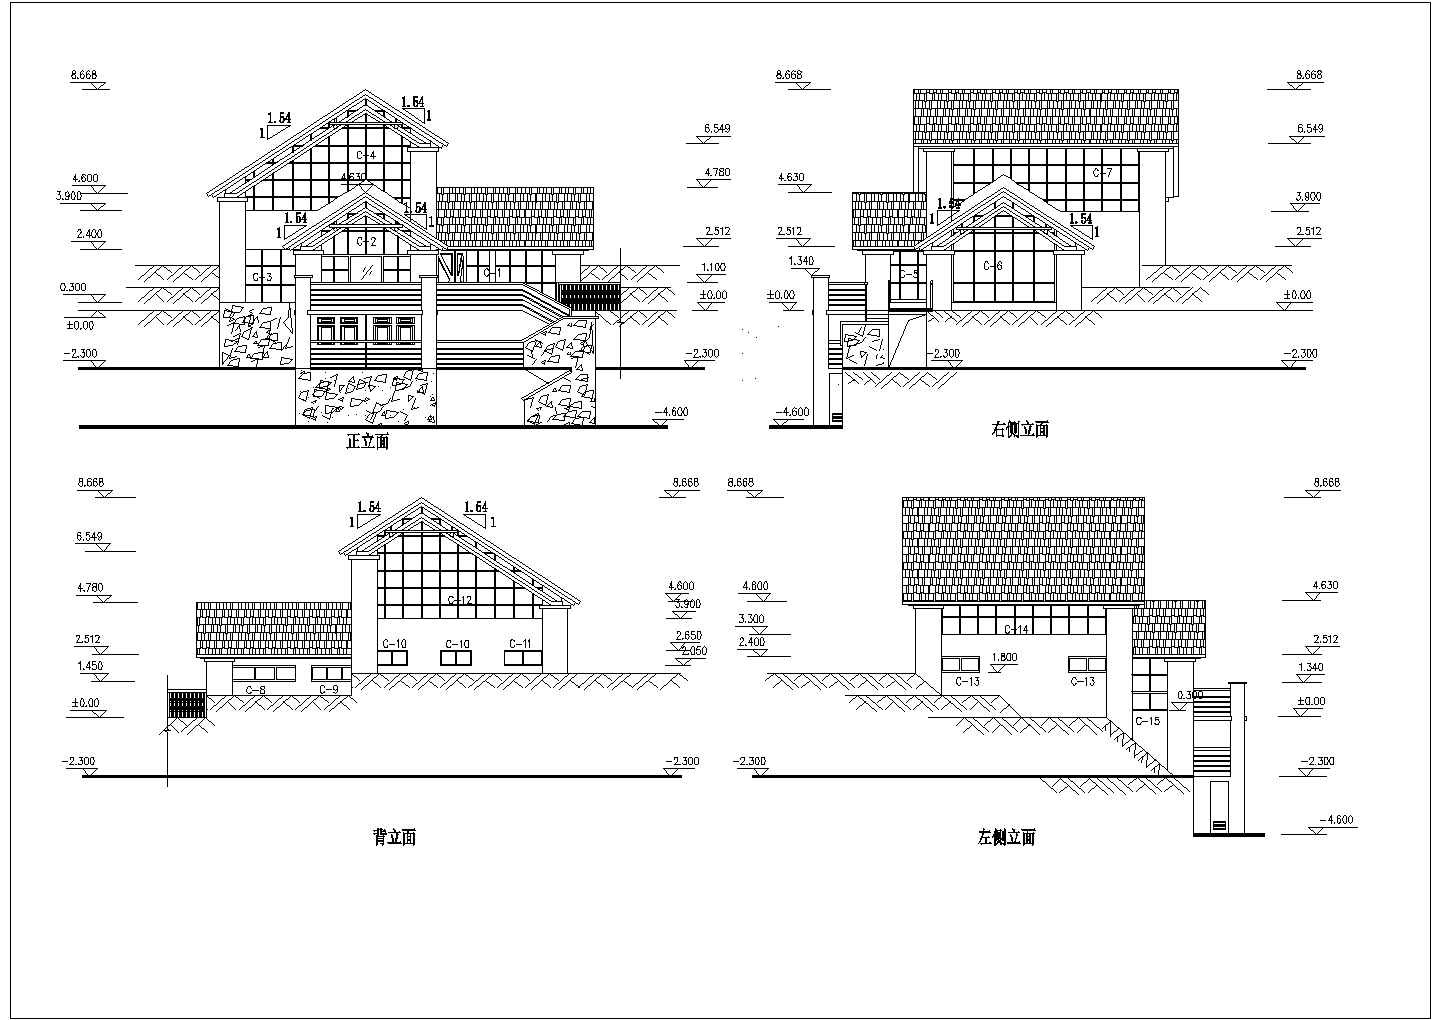 多套二至三层豪华别墅建筑结构设计施工图